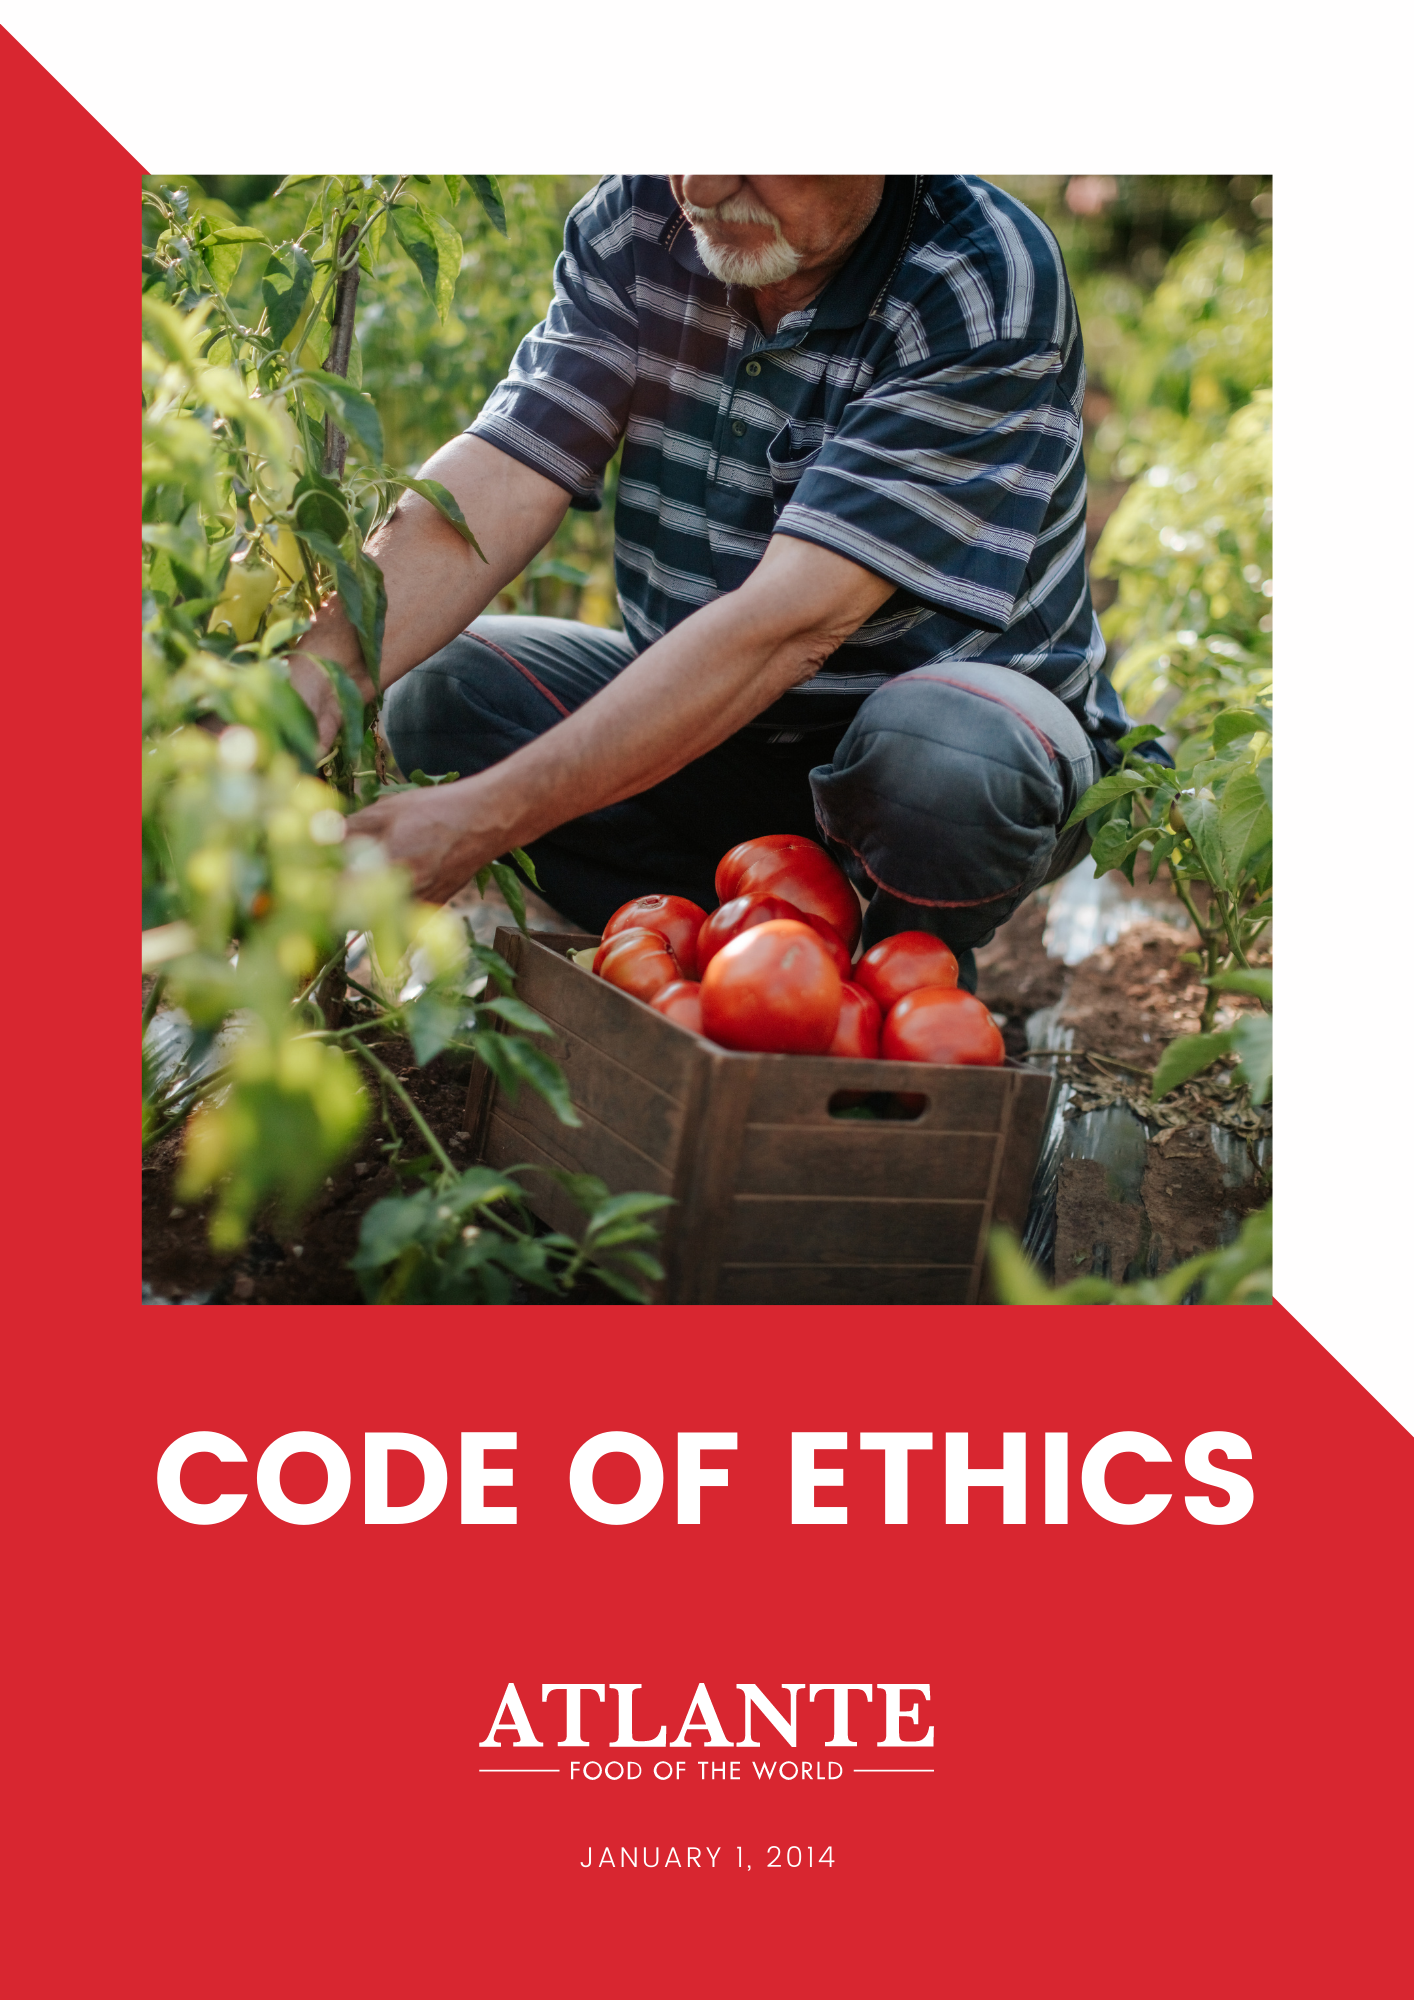 Code of ethics cover V2